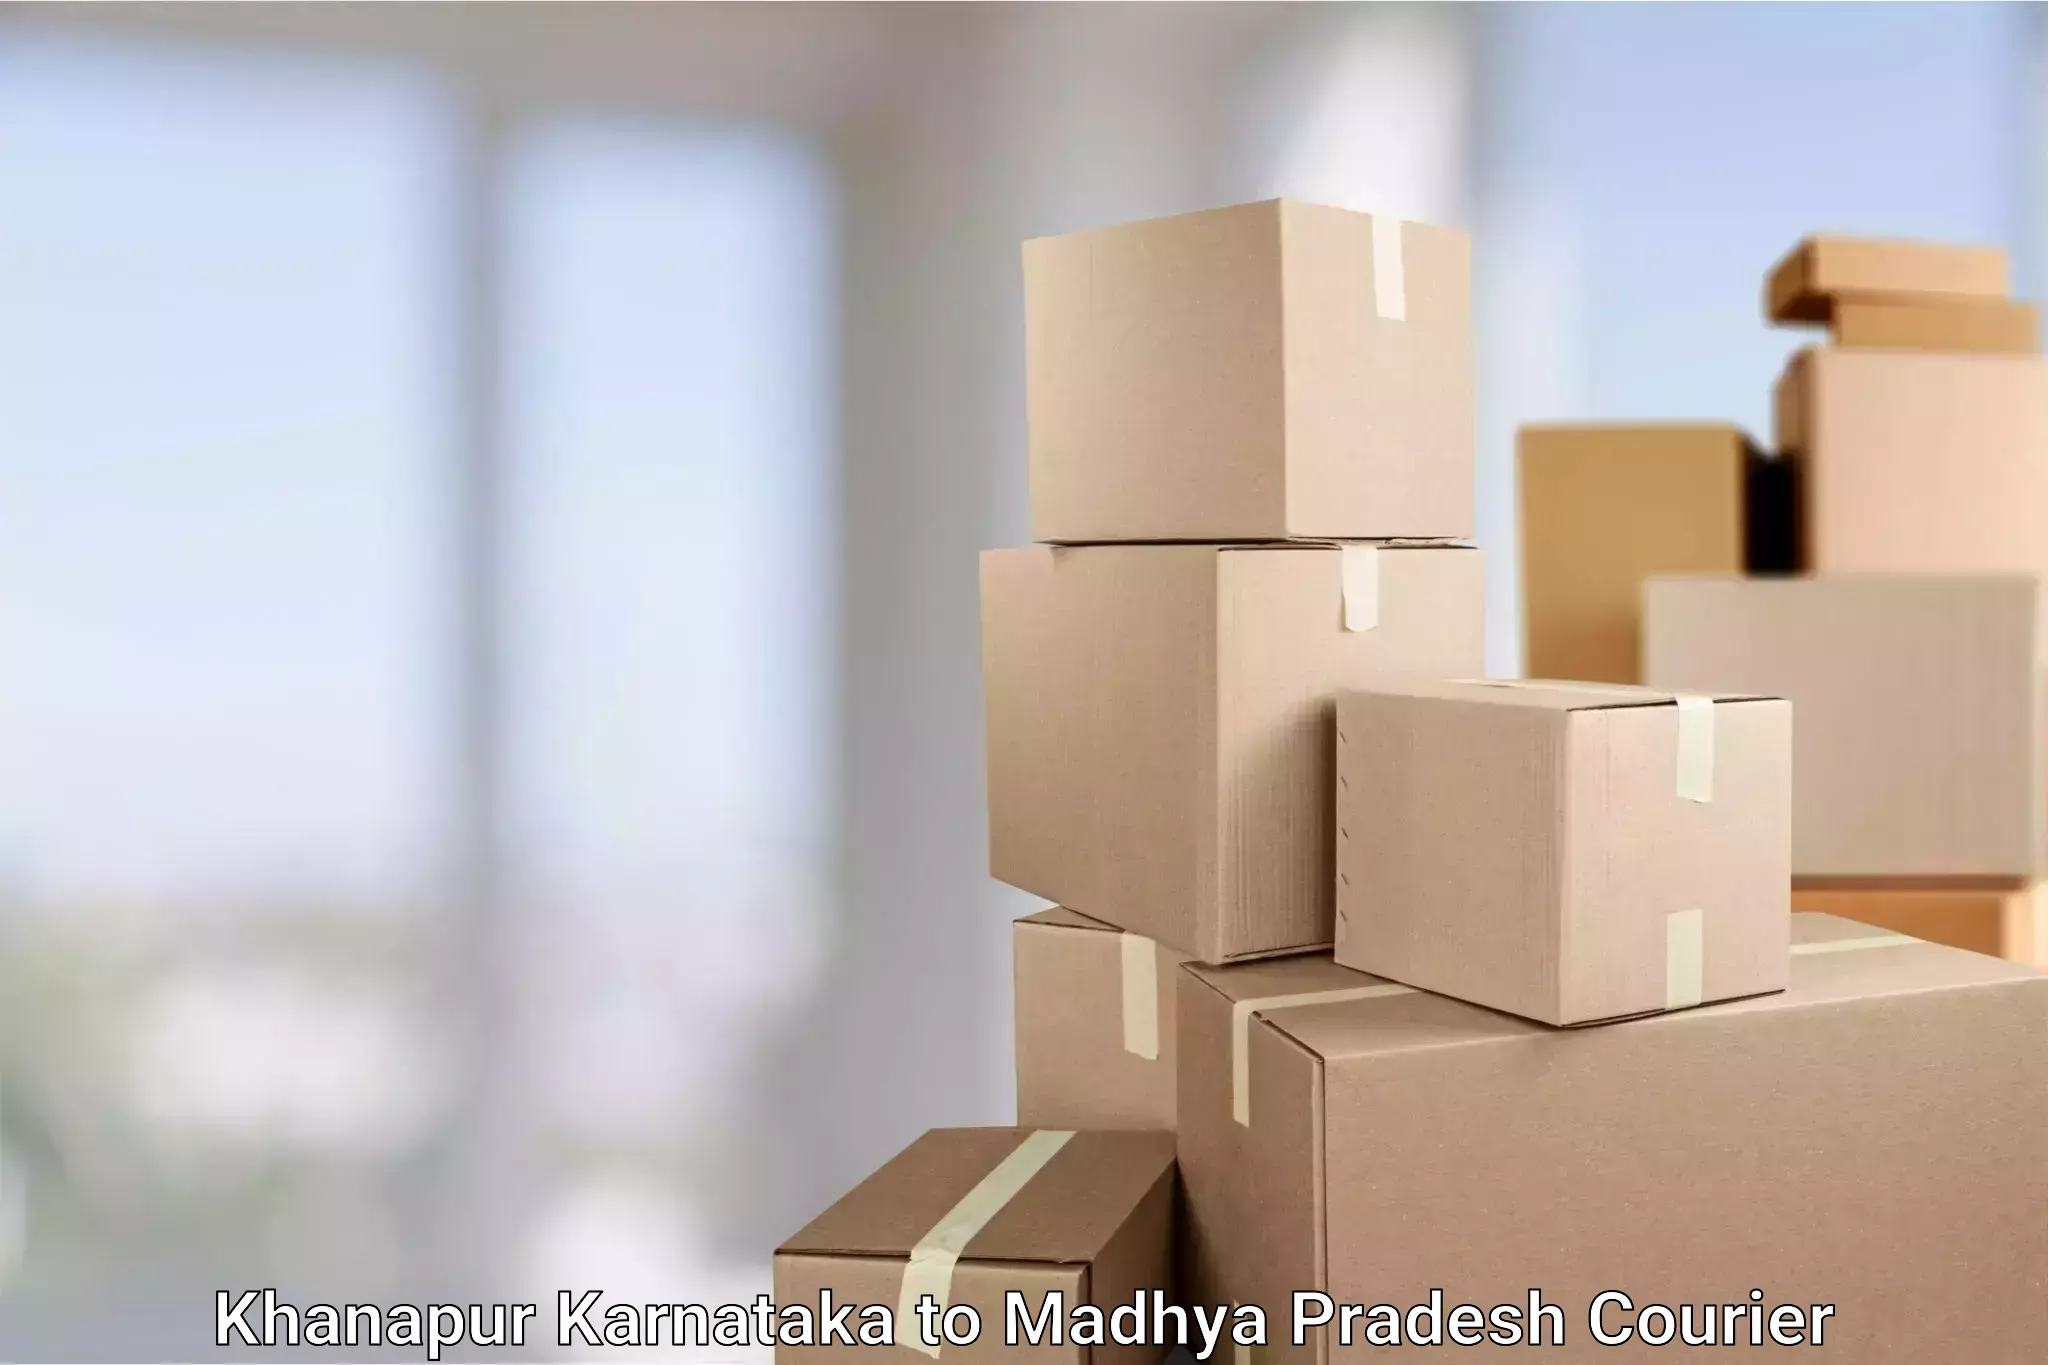 High-priority parcel service Khanapur Karnataka to Tikamgarh